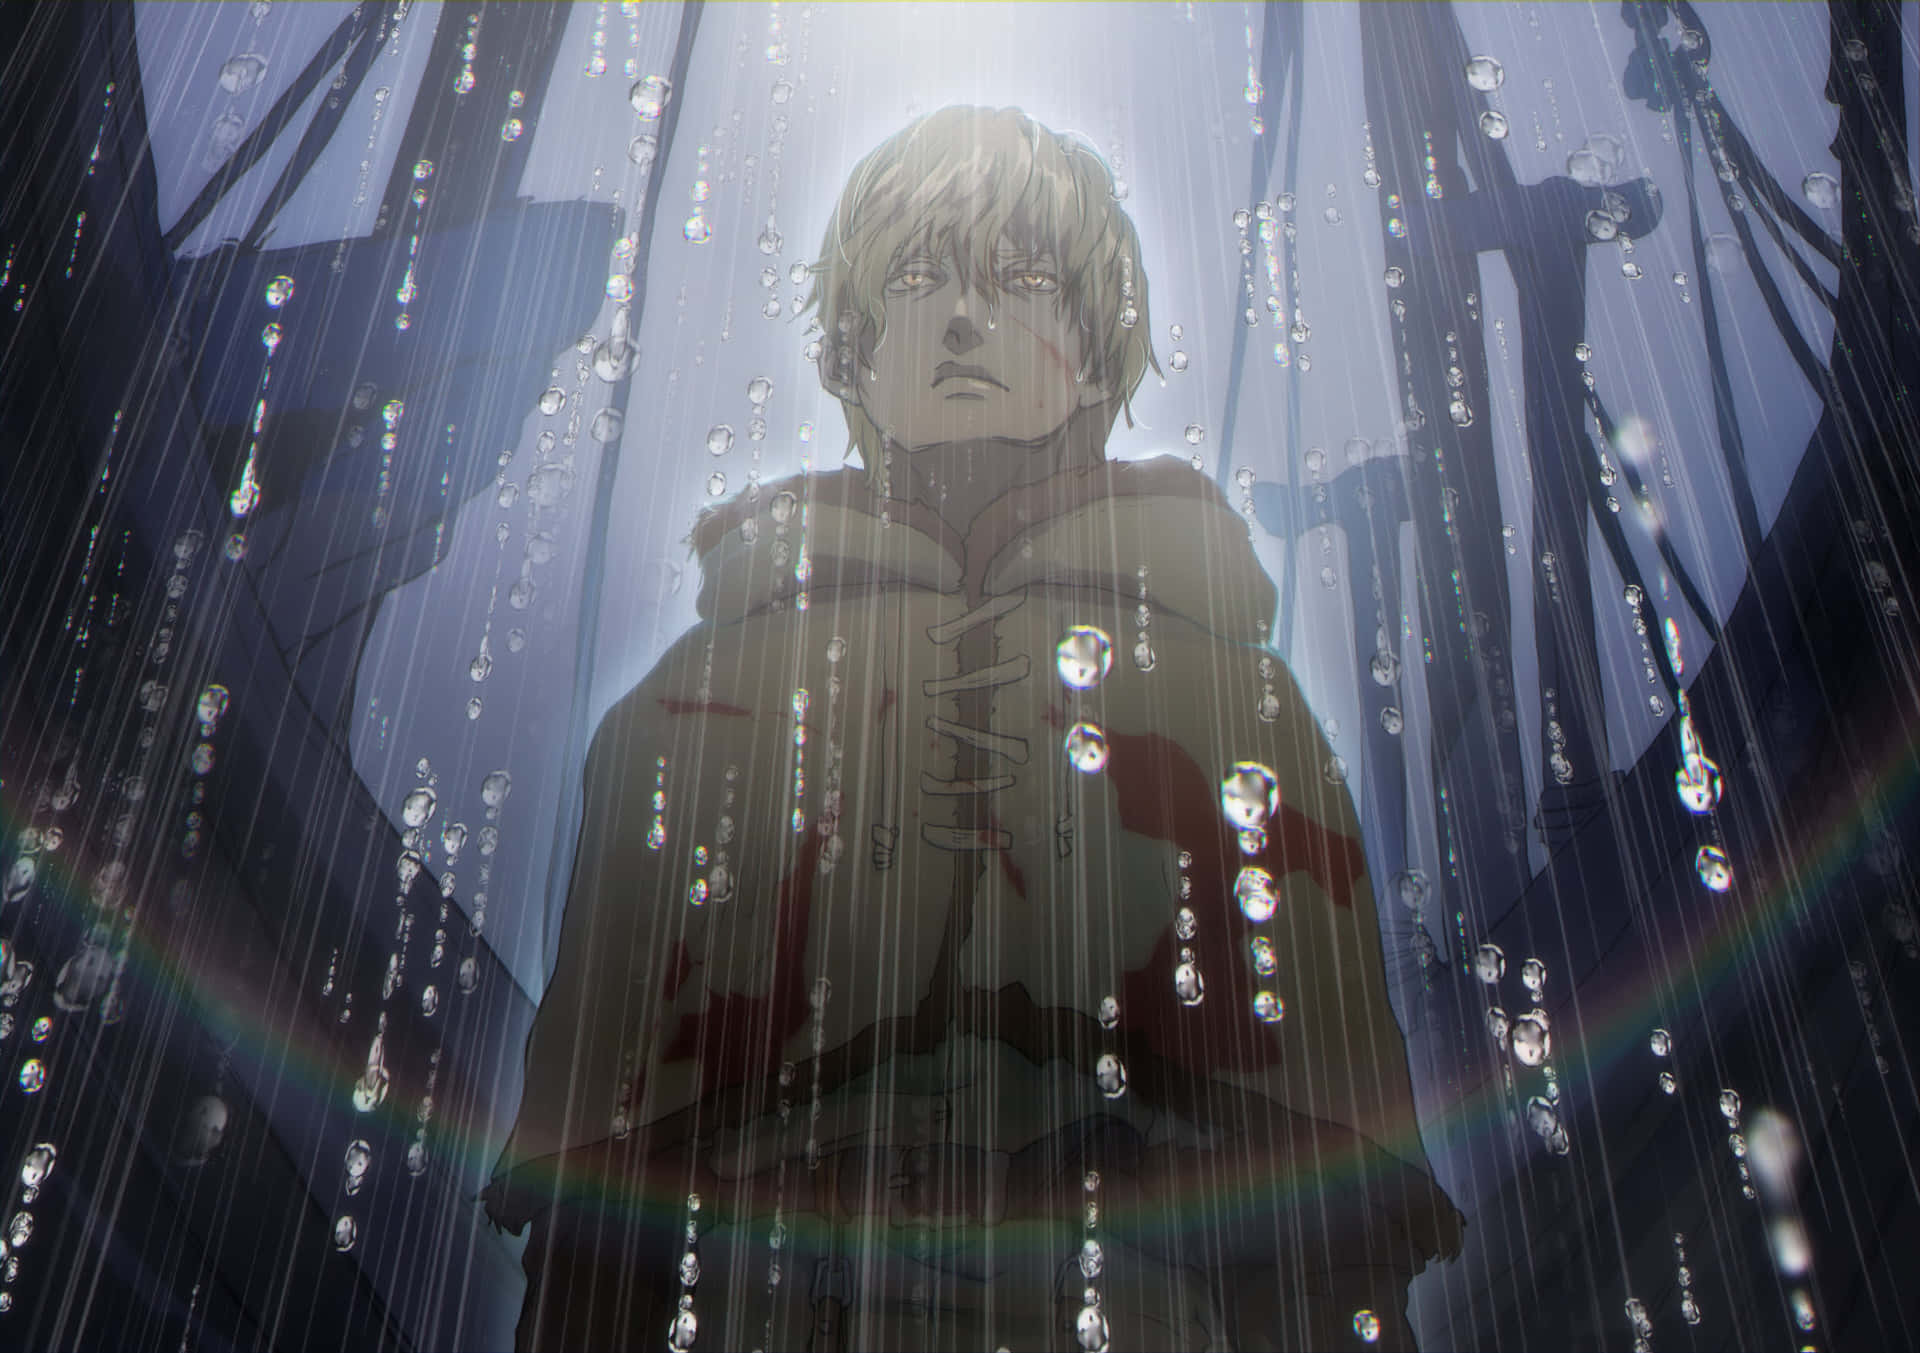 Rain Soaked Warrior Anime Scene Wallpaper